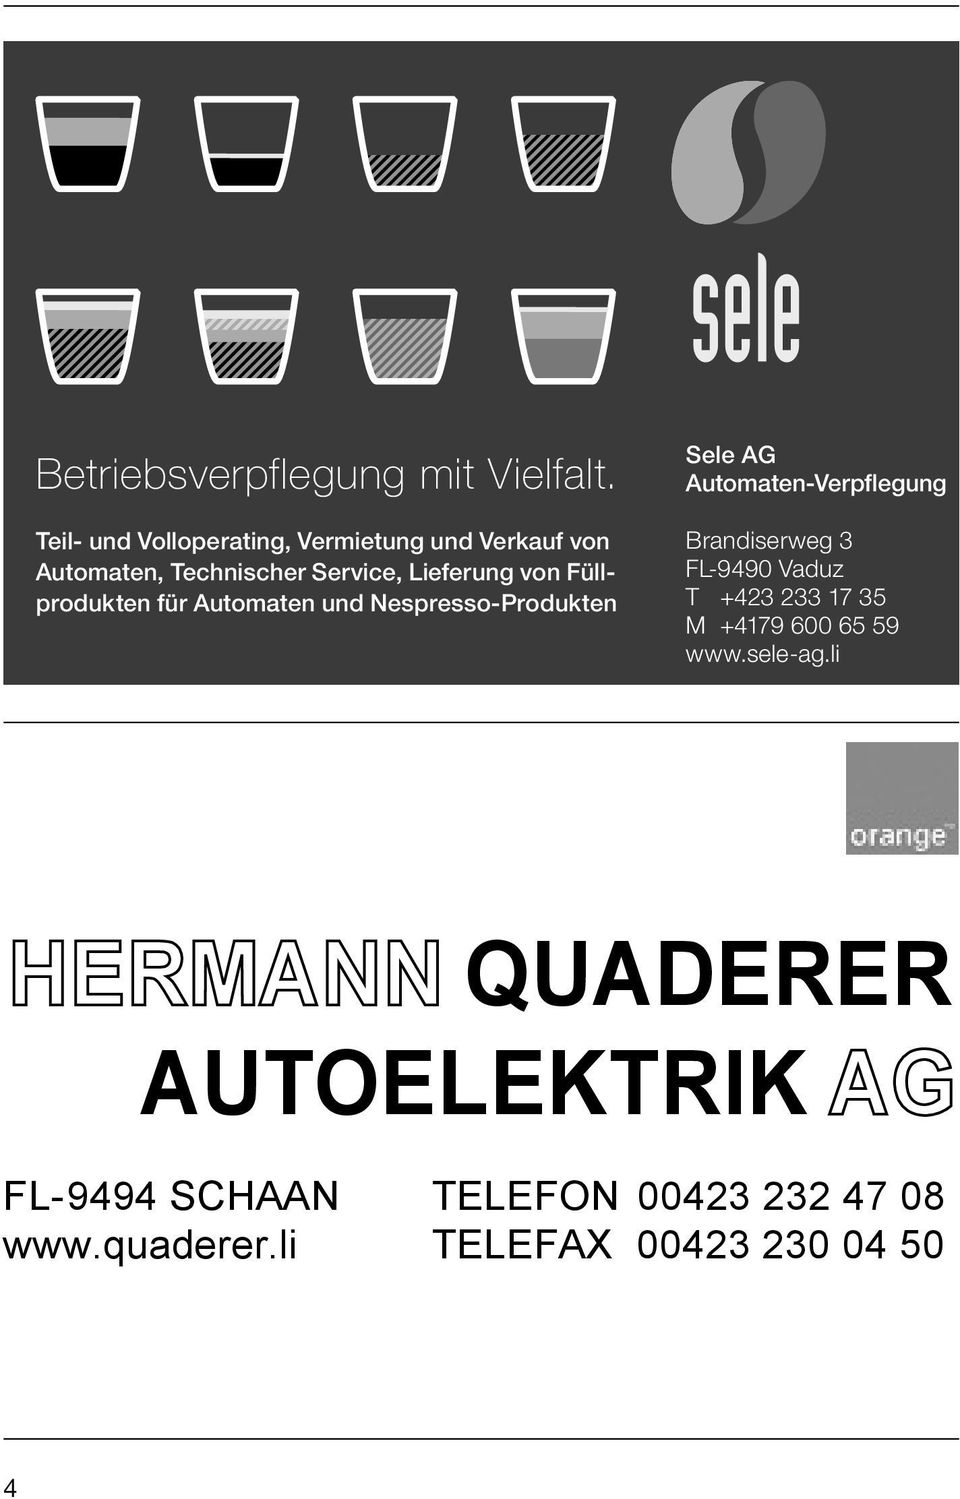 Füllprodukten für Automaten und Nespresso-Produkten Sele AG Automaten-Verpflegung Brandiserweg 3